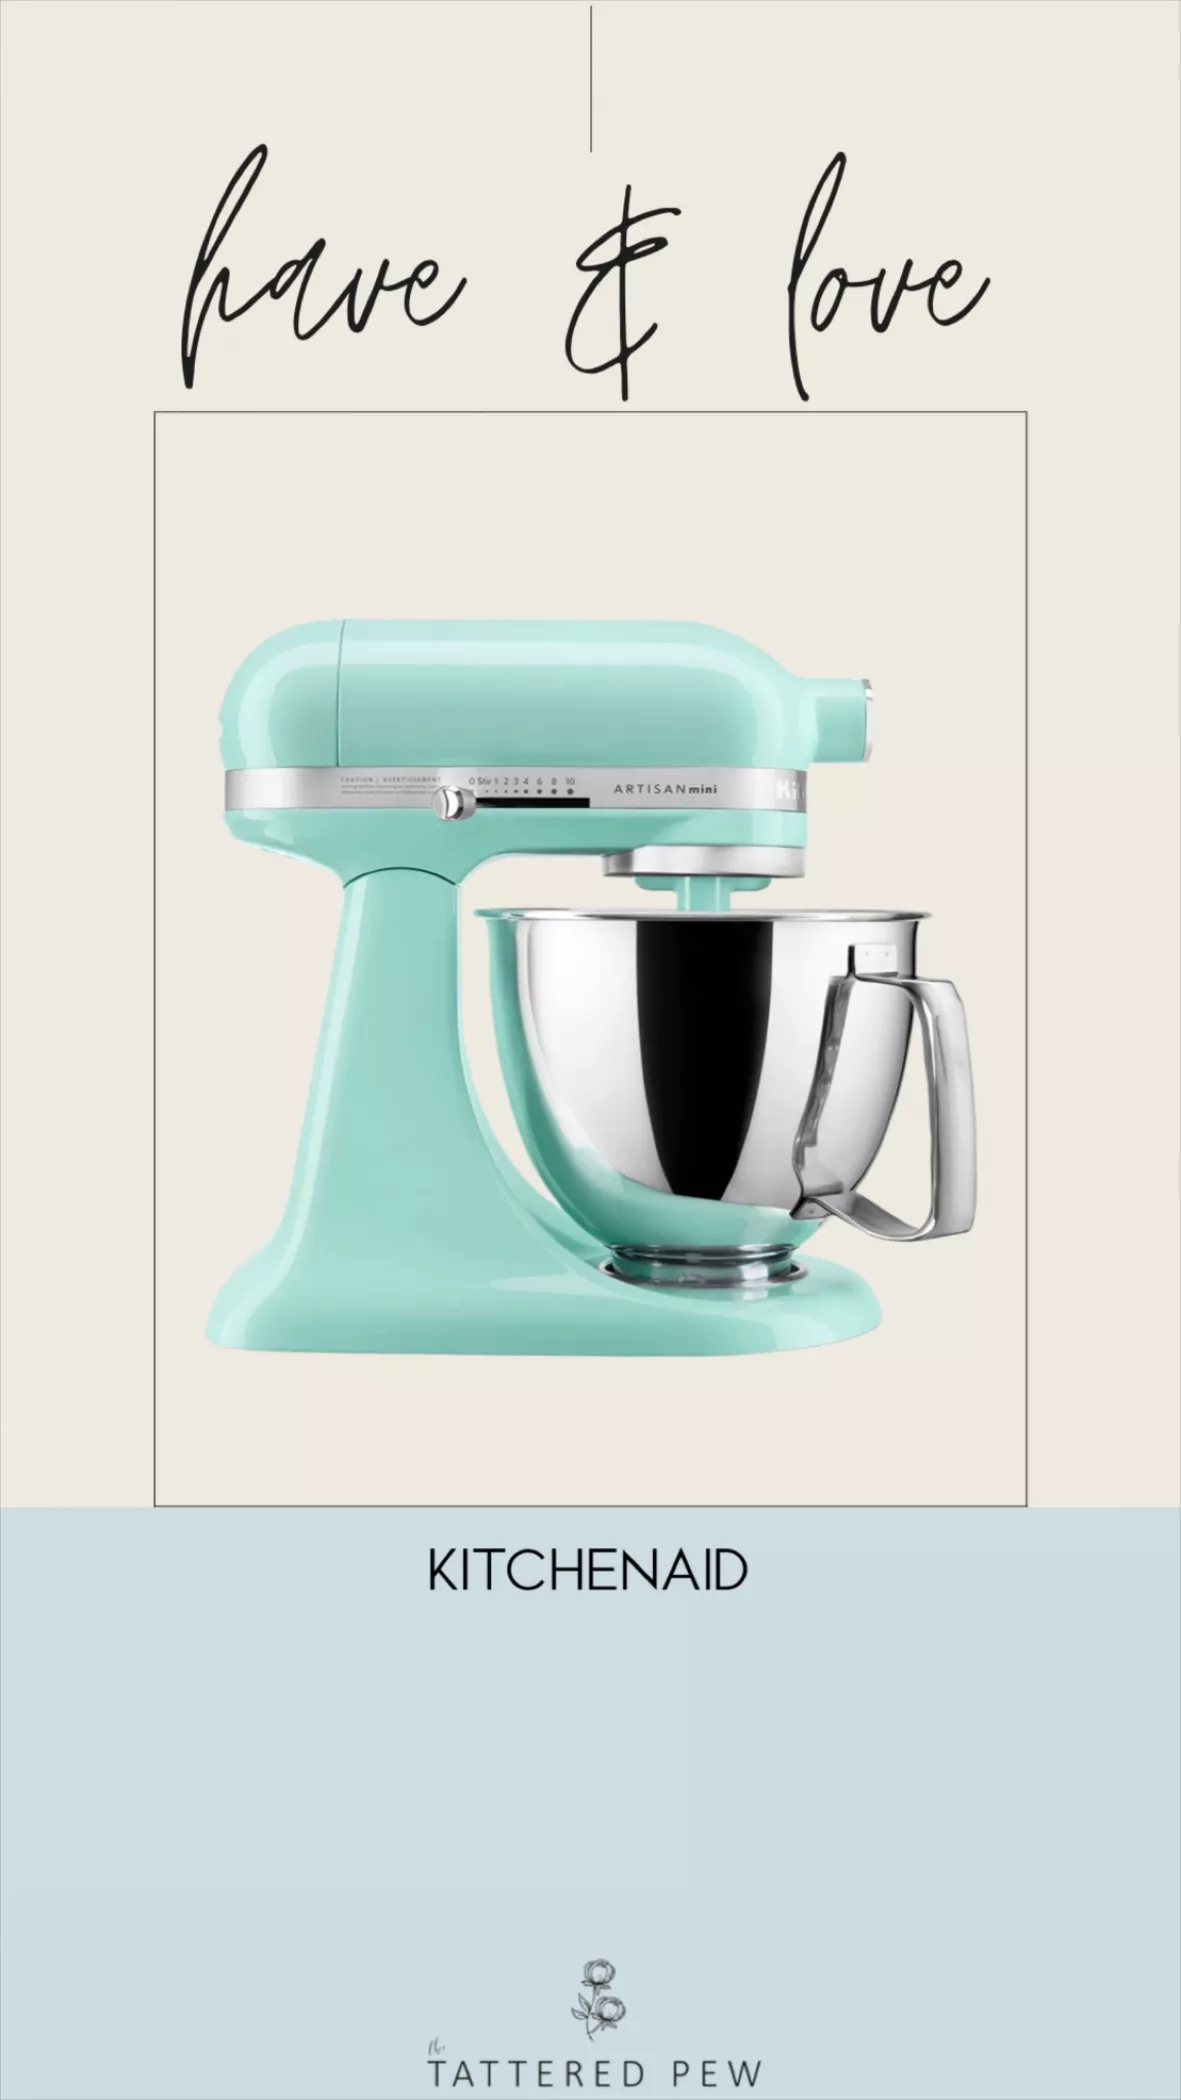 Meet the New KitchenAid Artisan MINI